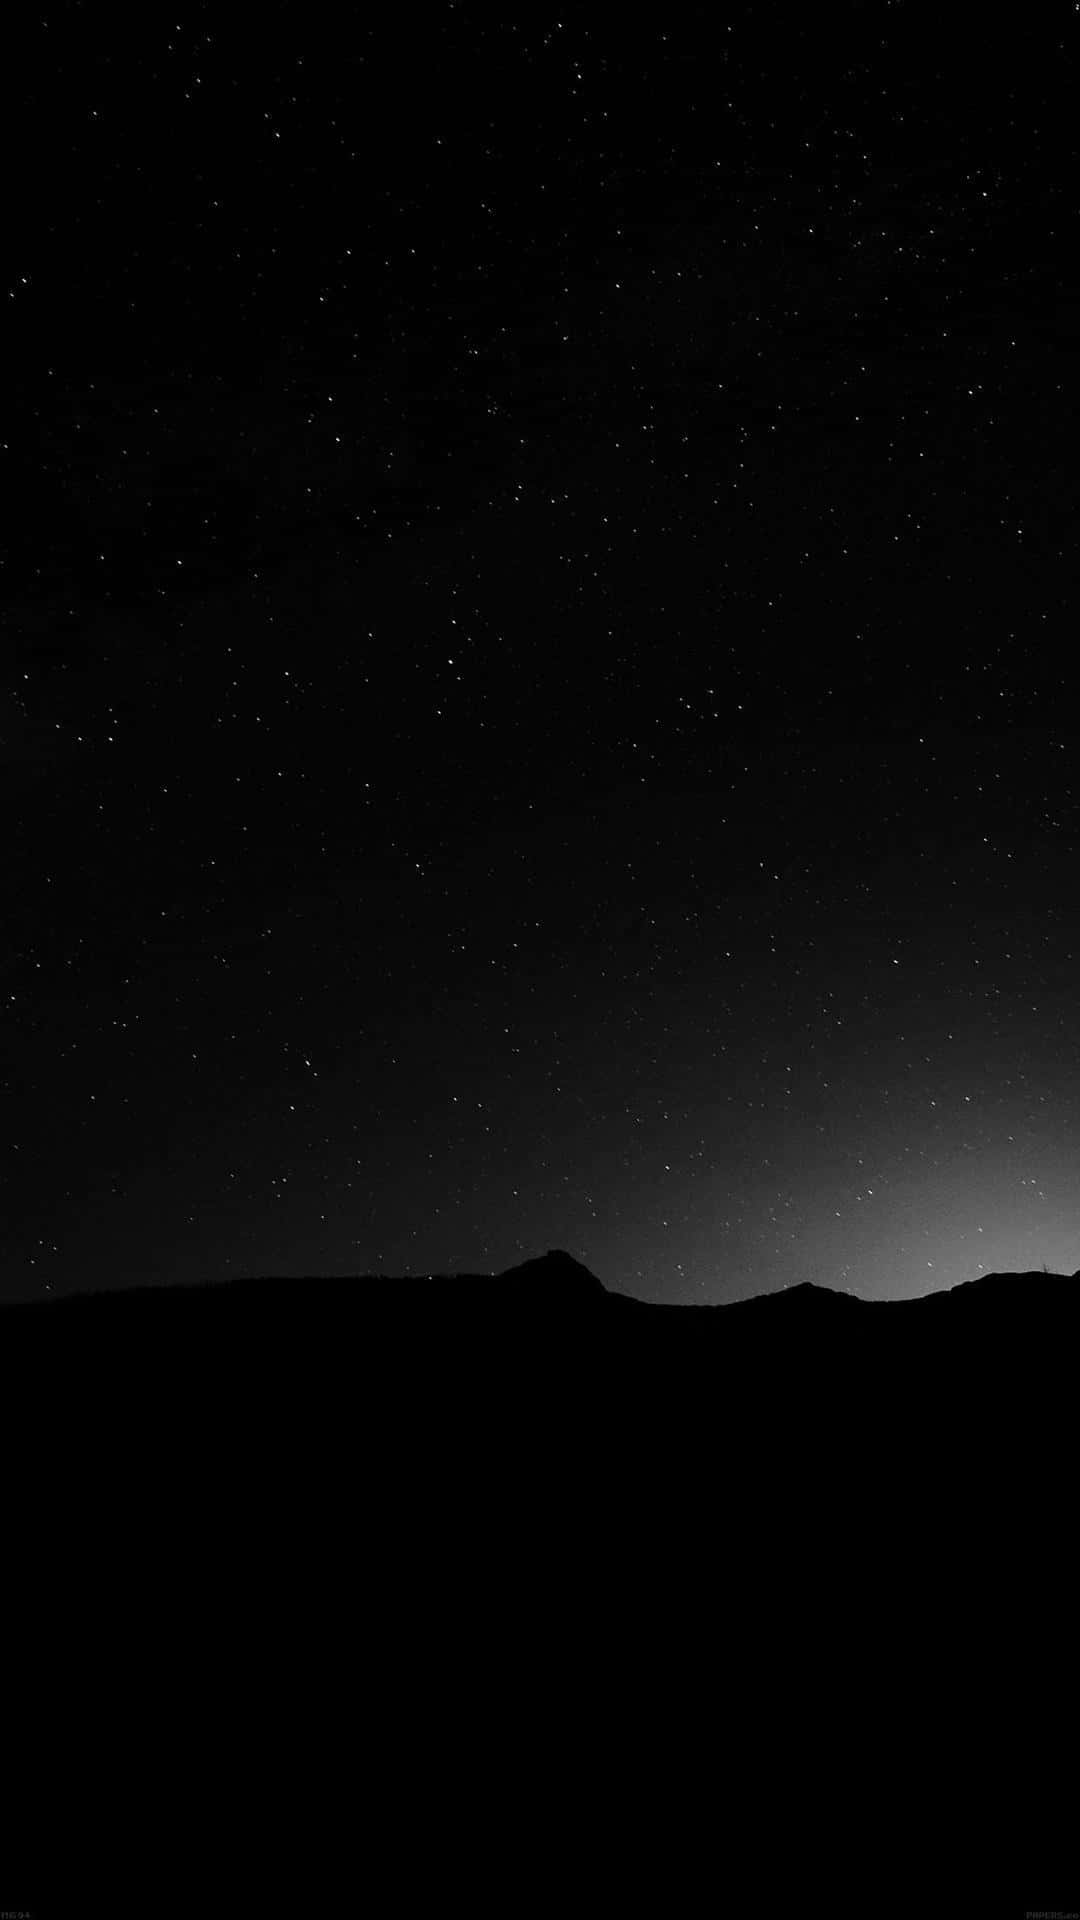 Sternenhimmeldunkle Nacht Tumblr Fotografie Iphone Wallpaper